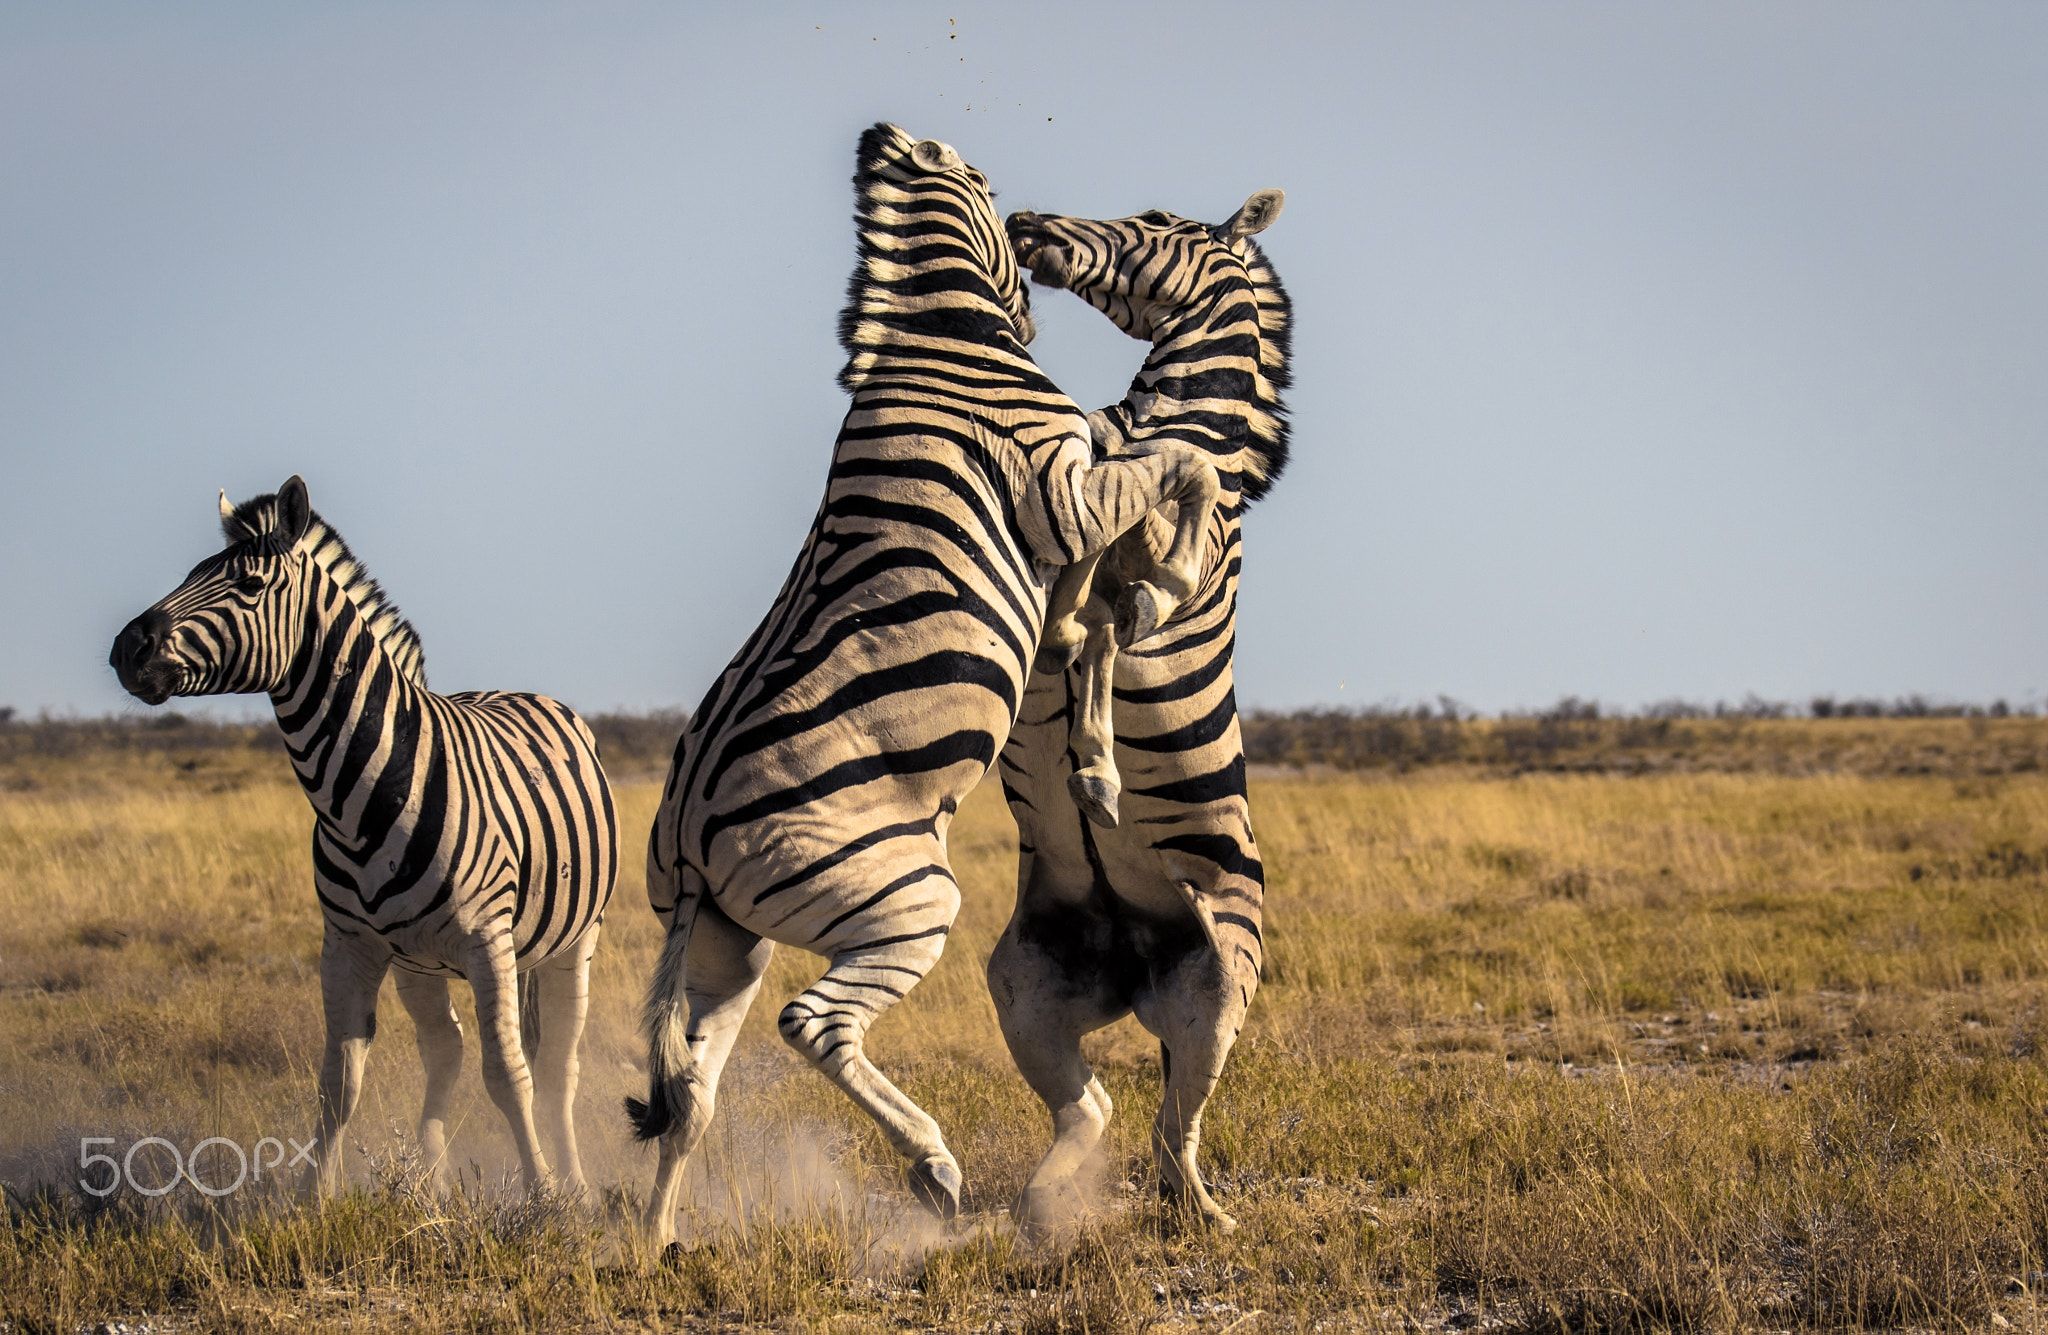 Zebras - Dancing Zebras | Этот удивительный мир | Pinterest